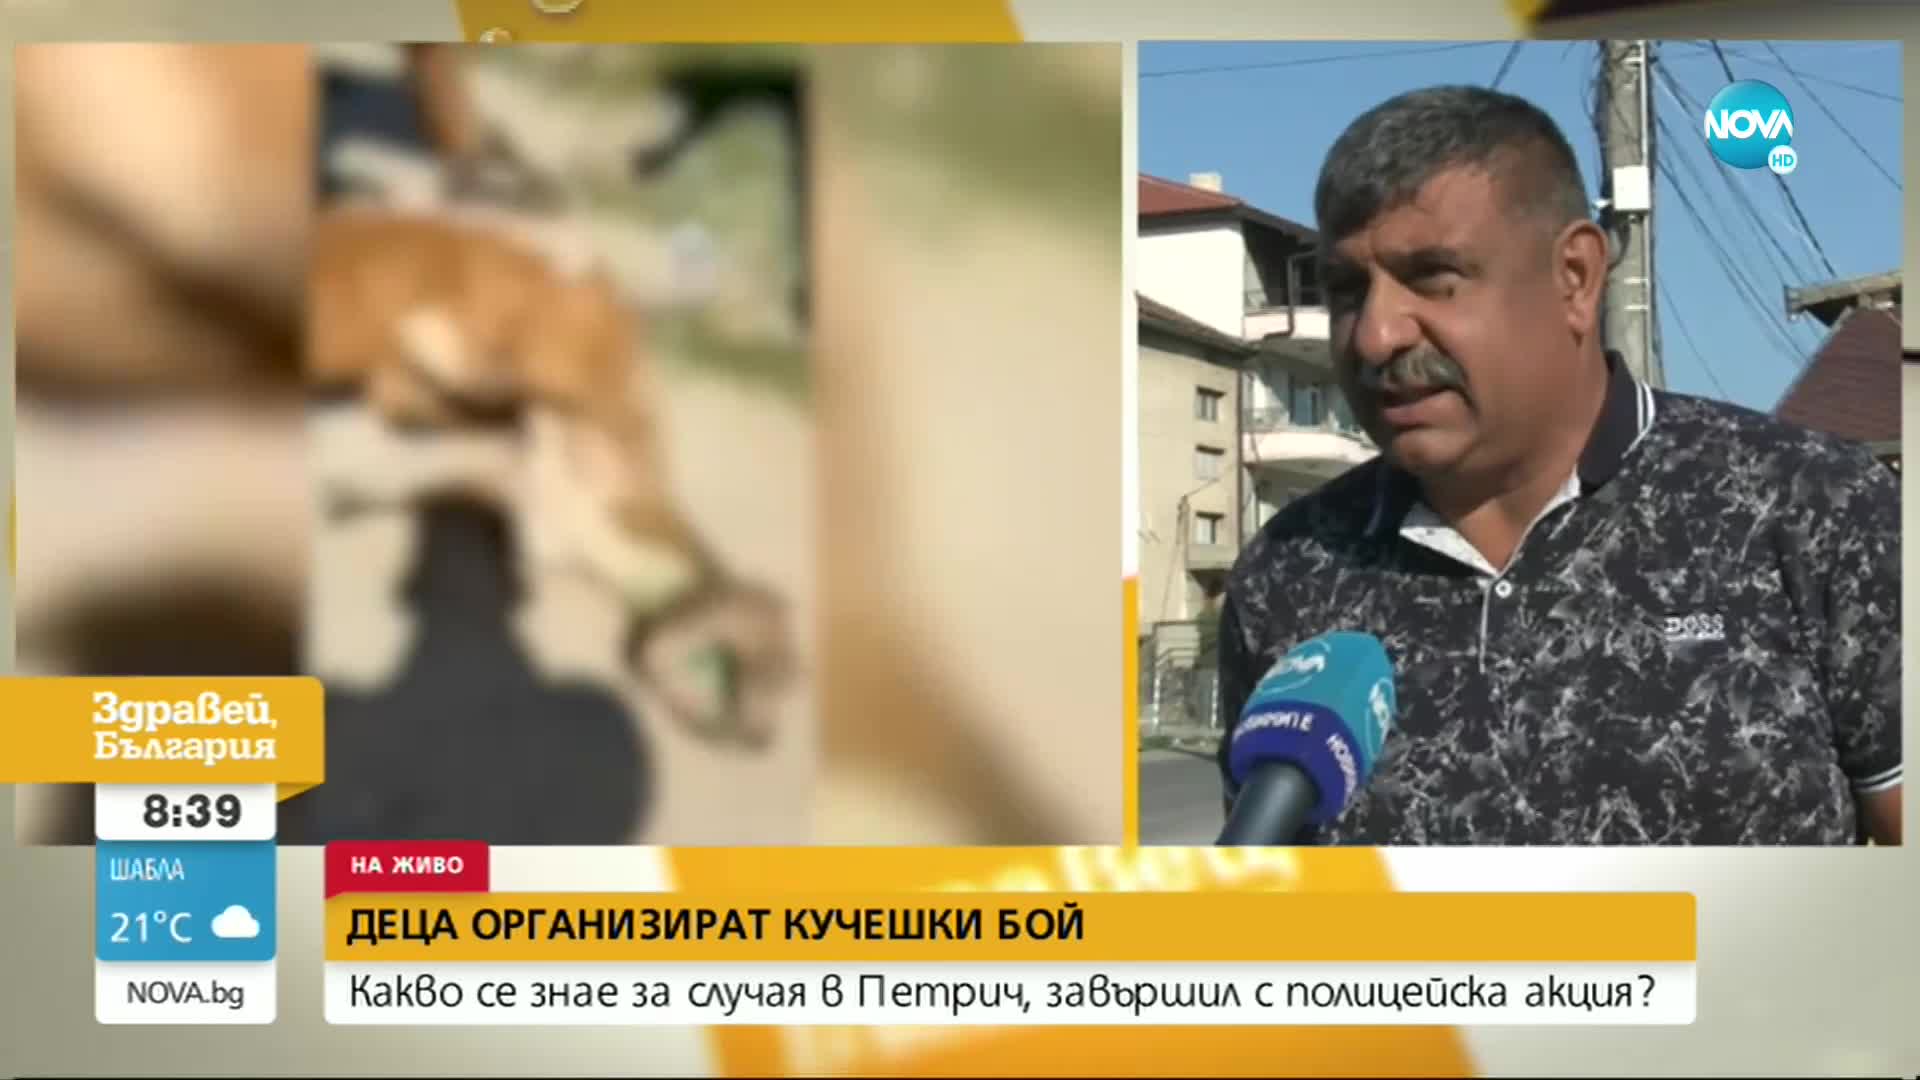 Организират ли кучешки боеве в Петрич